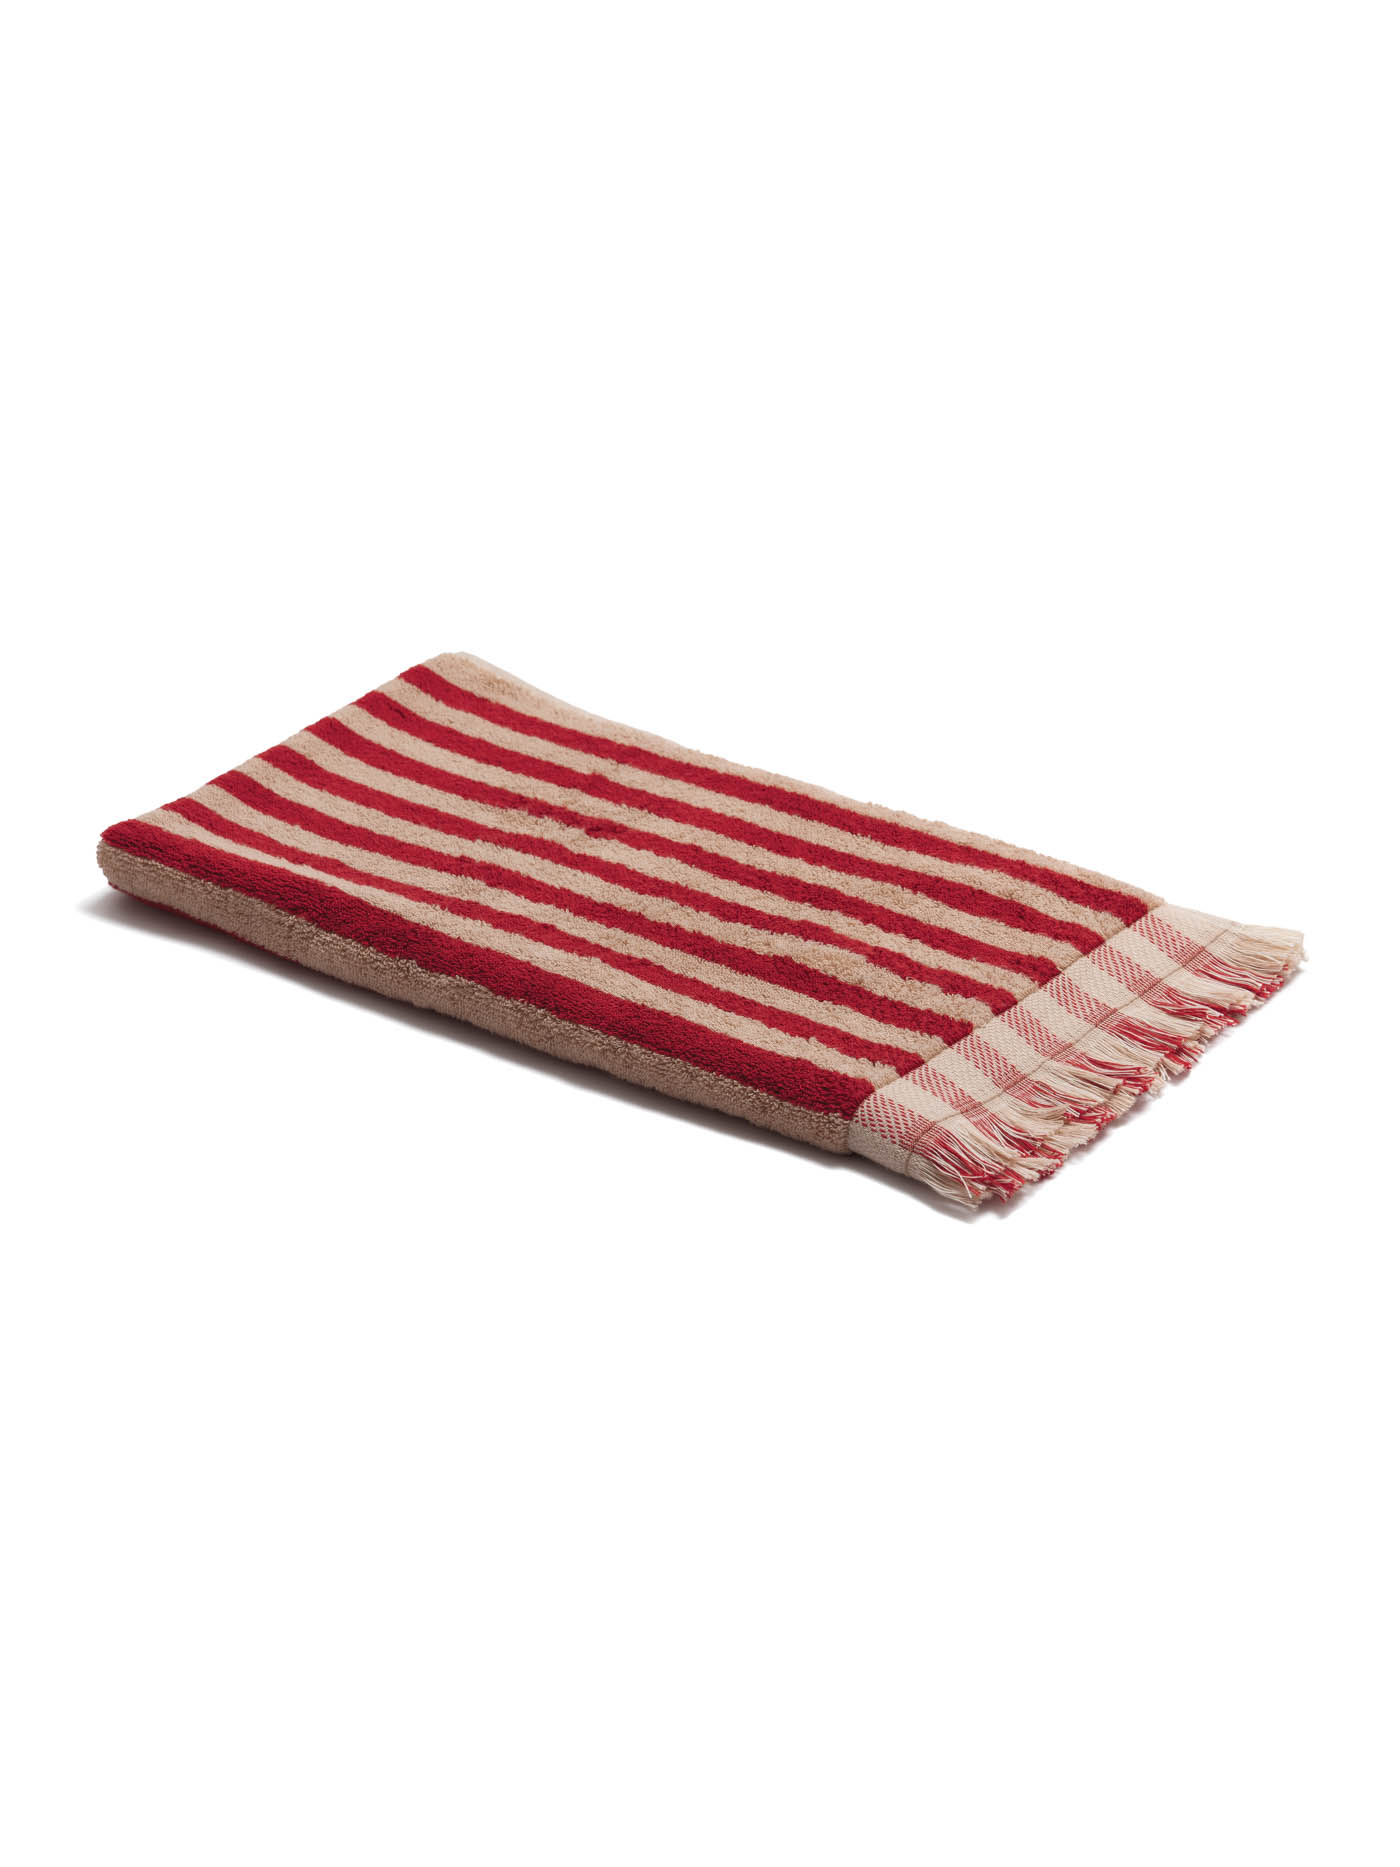 70 Piglet In Bed, Sandstone Red Stripe Cotton Towels, Us.pigletinbed.com